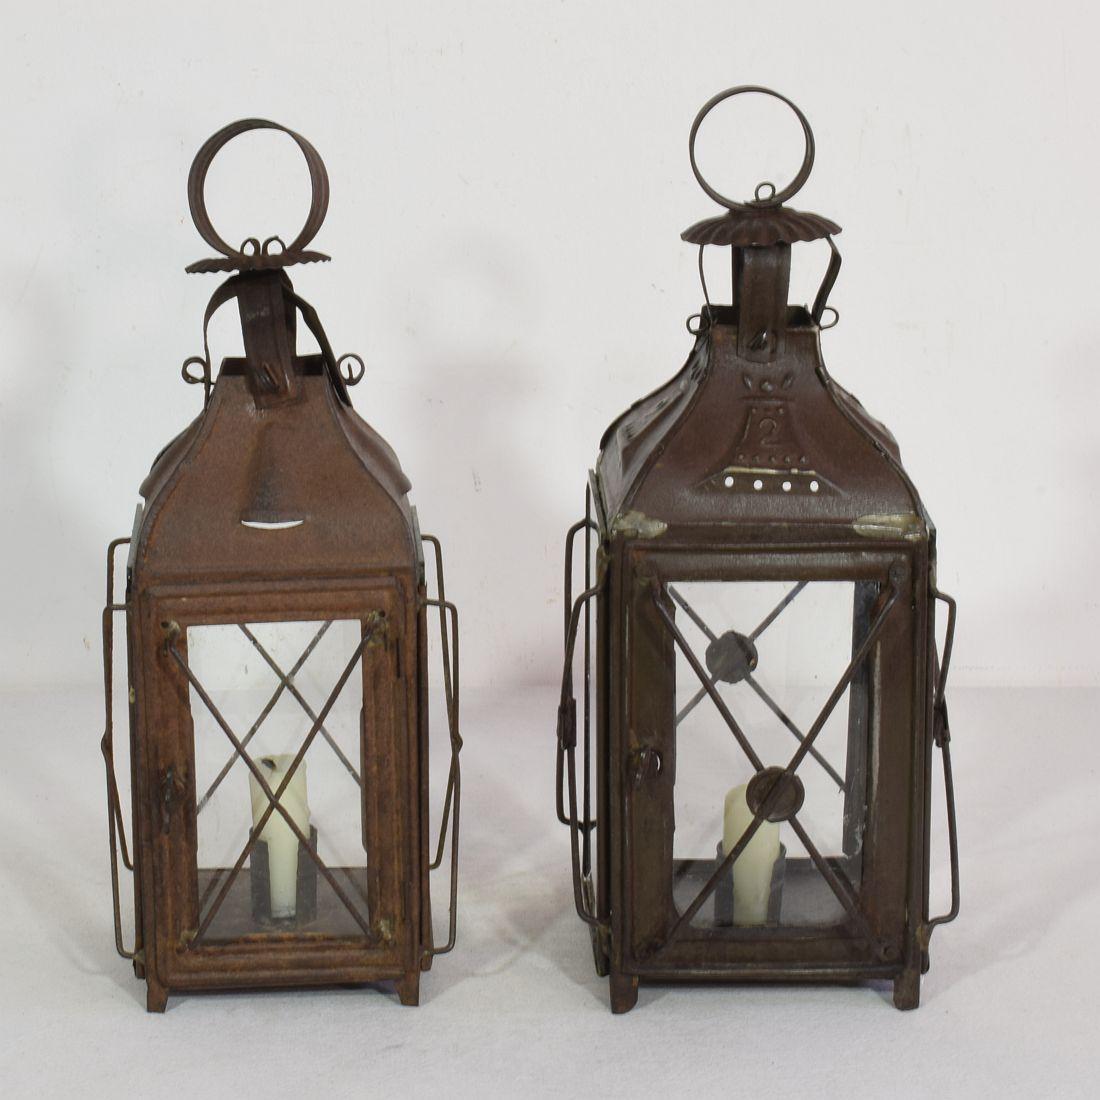 Belle paire de lanternes en métal, France, vers 1850-1900.
Réparations usées et anciennes (verre remplacé une fois)
Mesures : H:30-31cm L:12-13cm P:12-13cm 
Mesure ci-dessous de la plus grande lanterne.